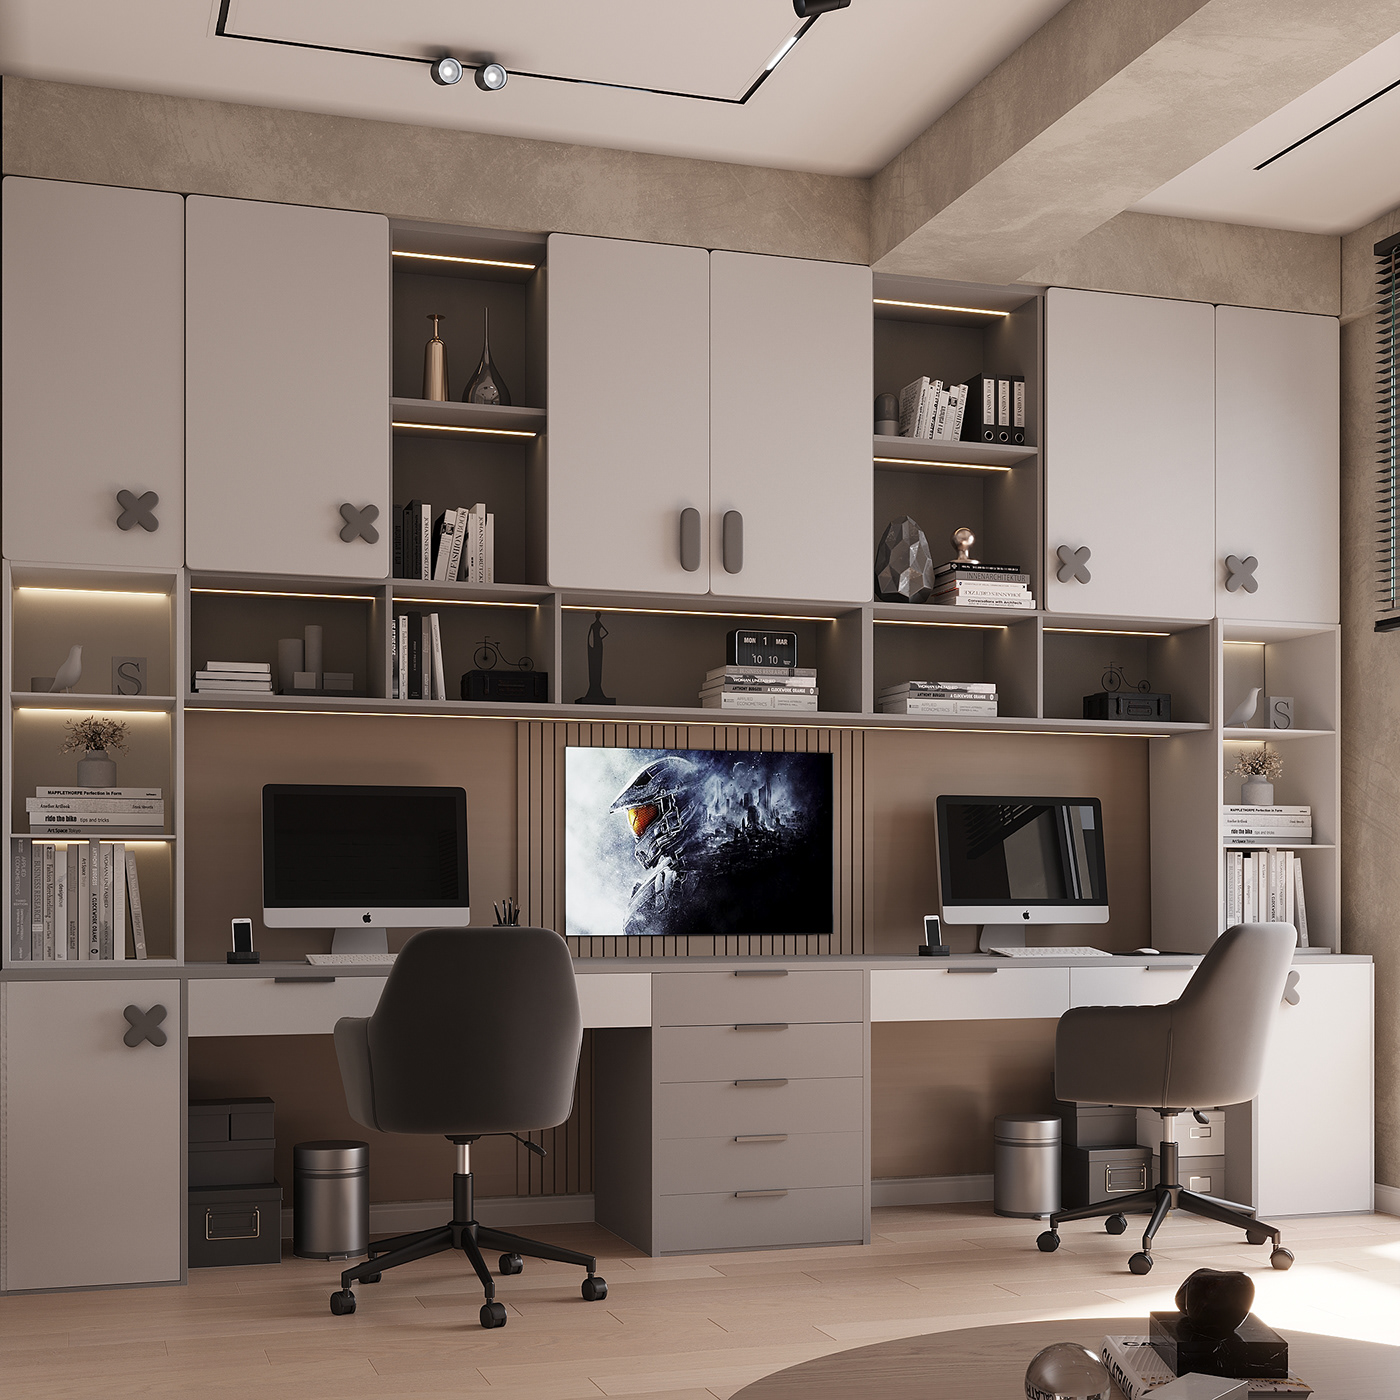 interior design  architecture visualization Render modern 3ds max 3D archviz